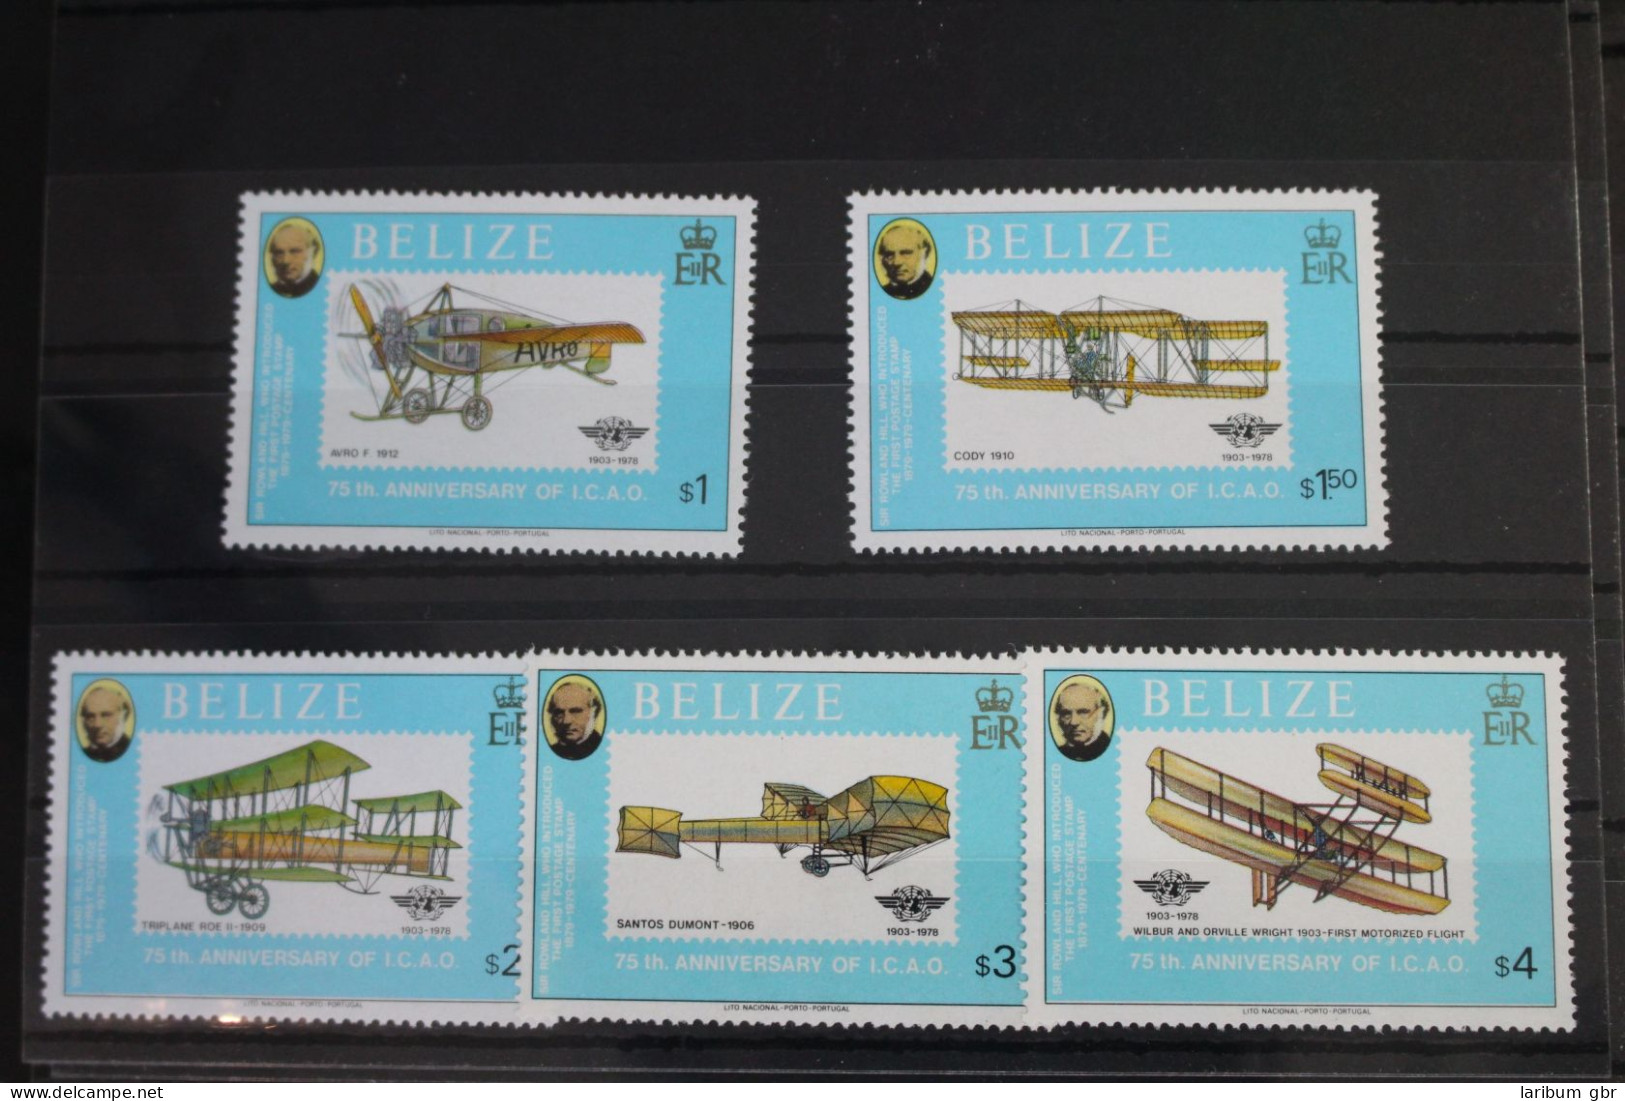 Belize 424A-428A Postfrisch Luftfahrt #FS269 - Belize (1973-...)